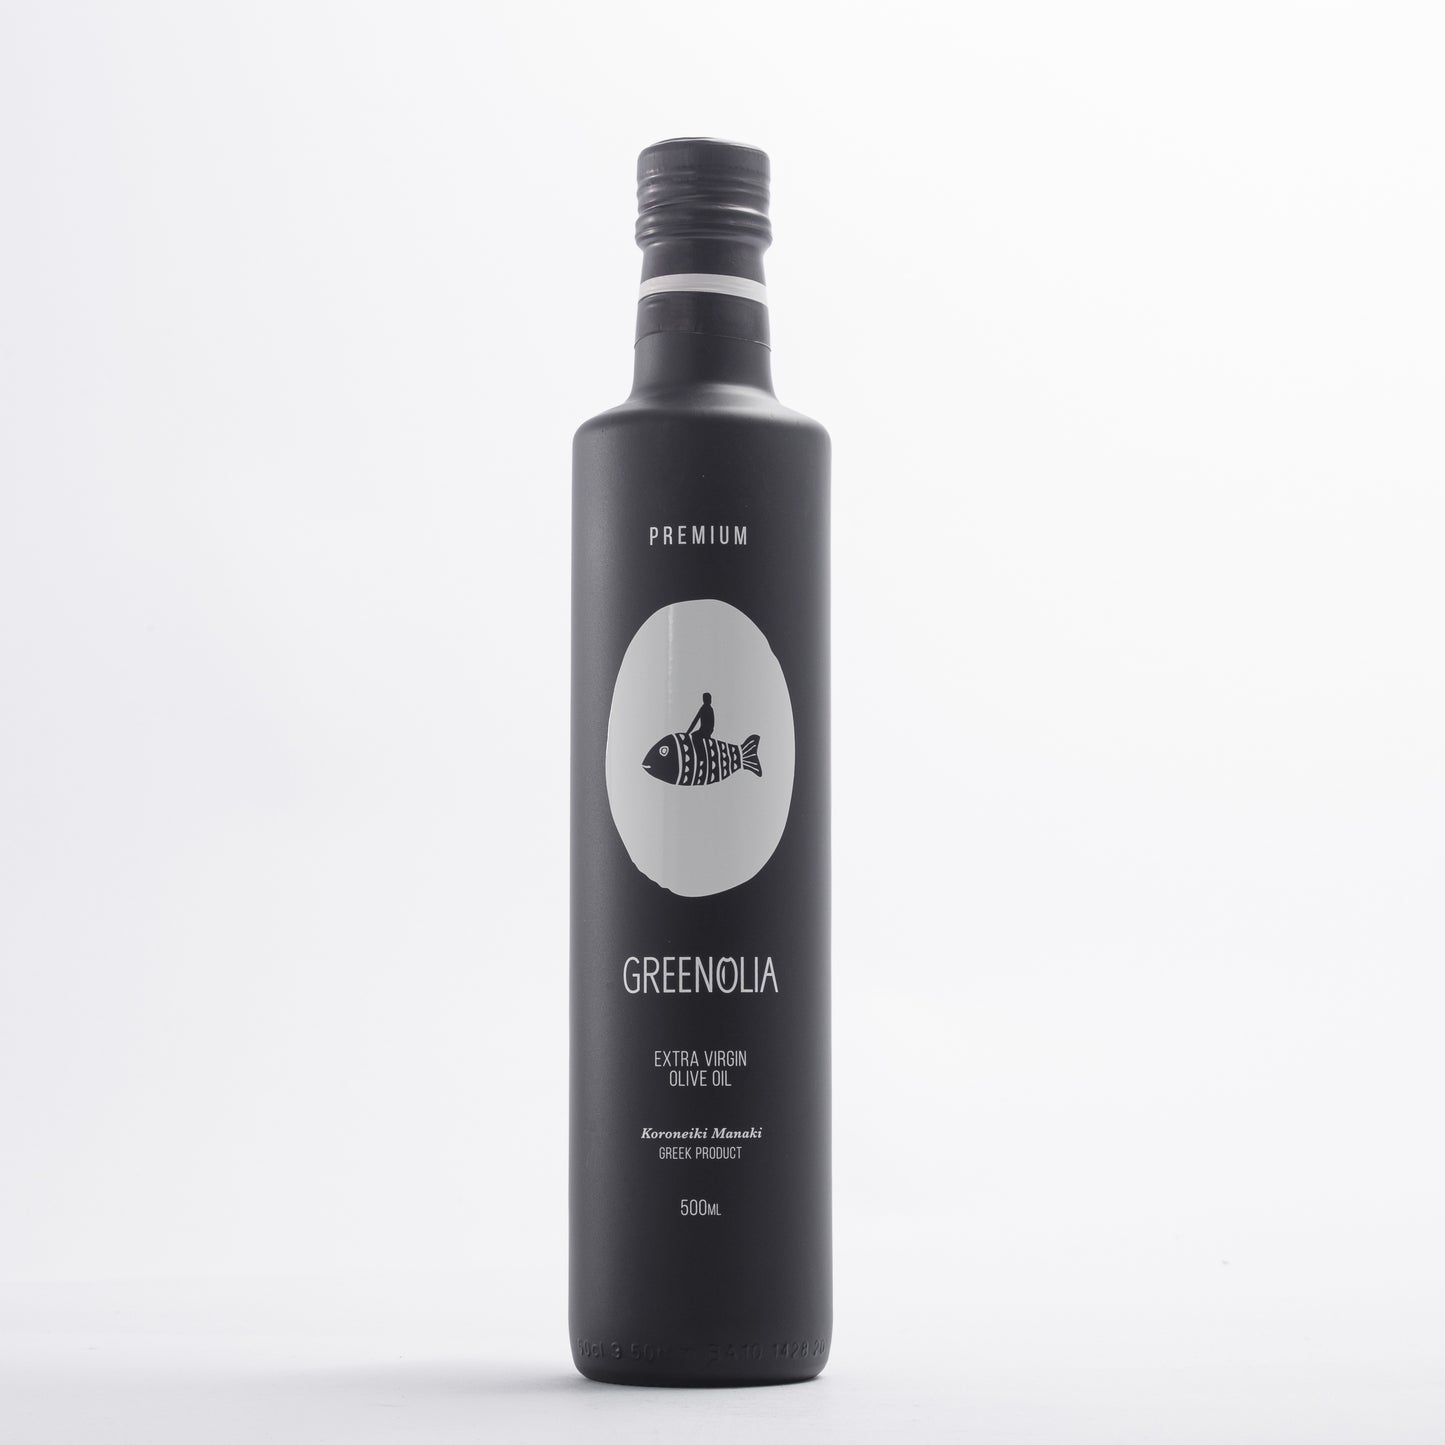 Μπουκάλι έξτρα παρθένο ελαιόλαδο Greenolia Premium 500ml